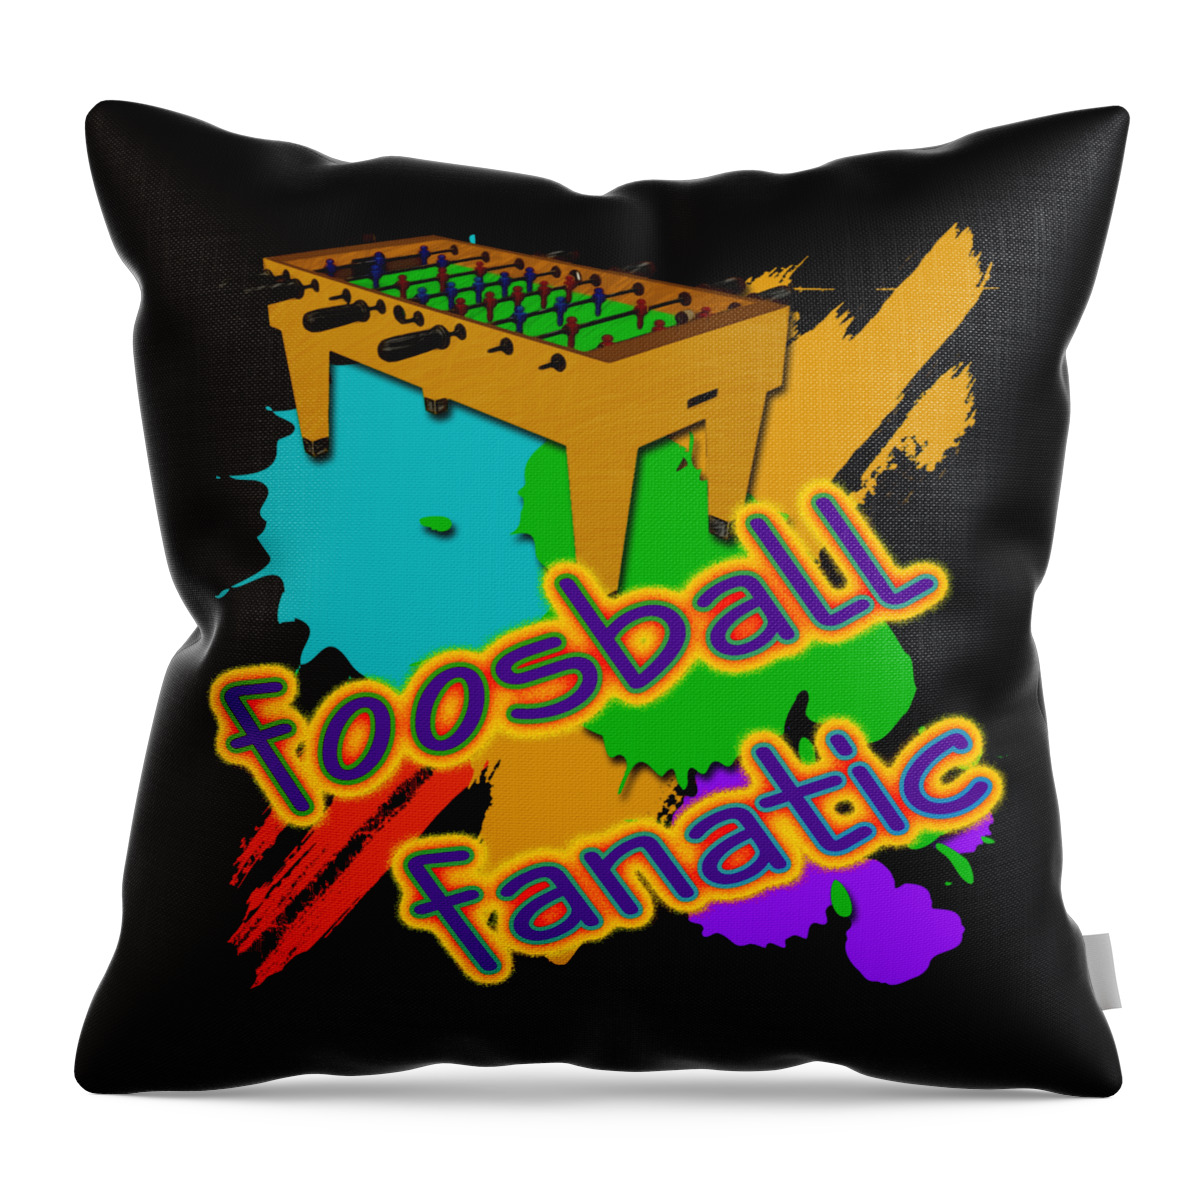 Foosball Fanatic Throw Pillow featuring the digital art Foosball Fanatic by David G Paul